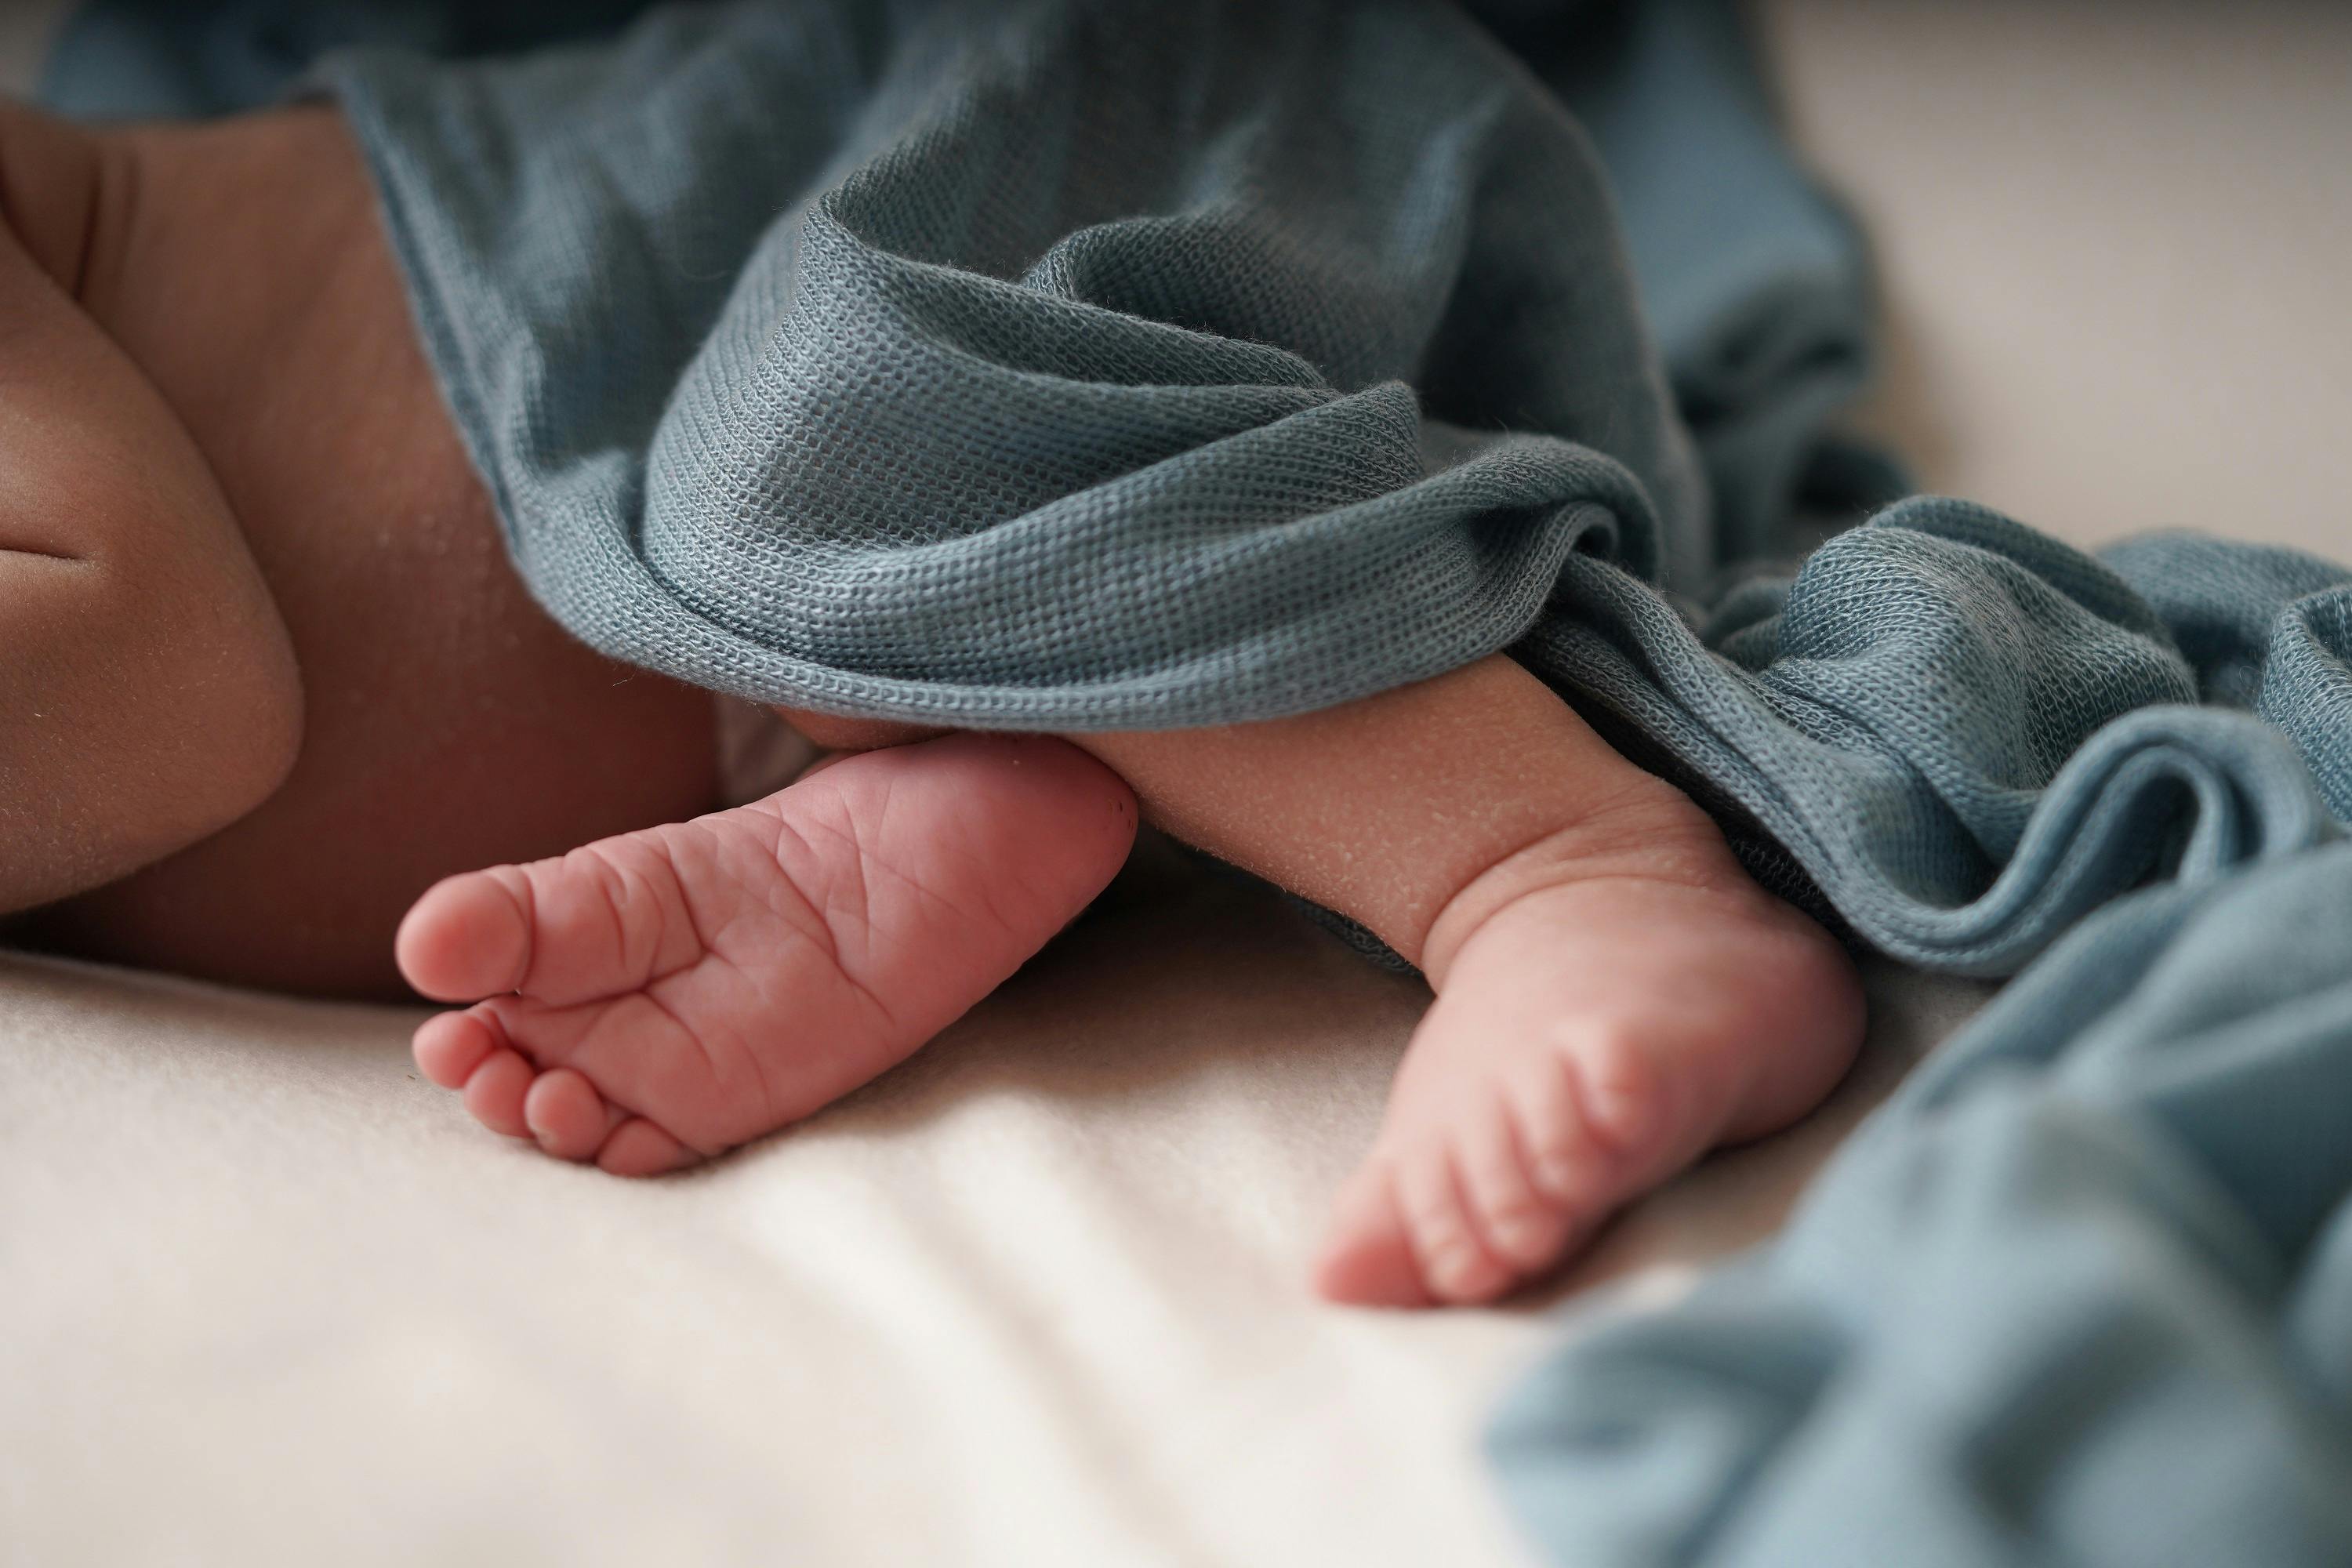 Babyfüße unter einer blauen Decke.